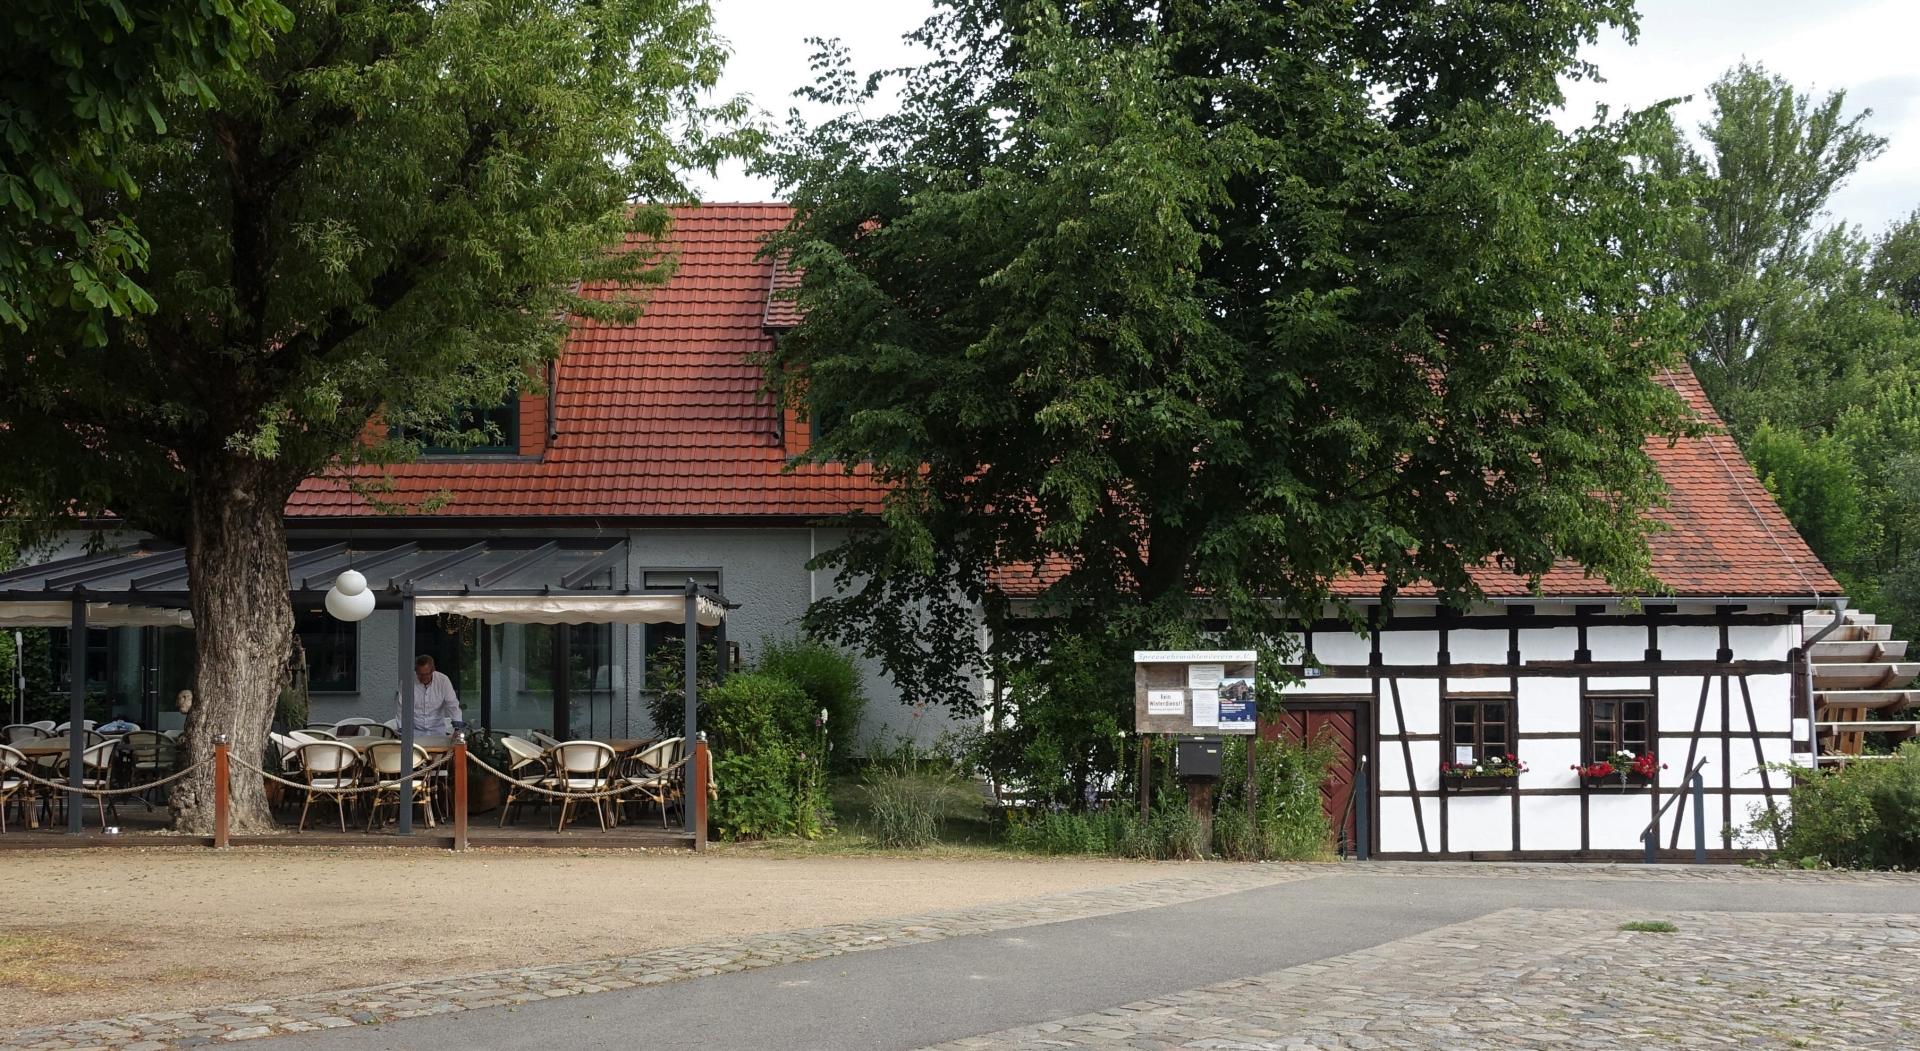 Restaurant und Spreewehrmühle